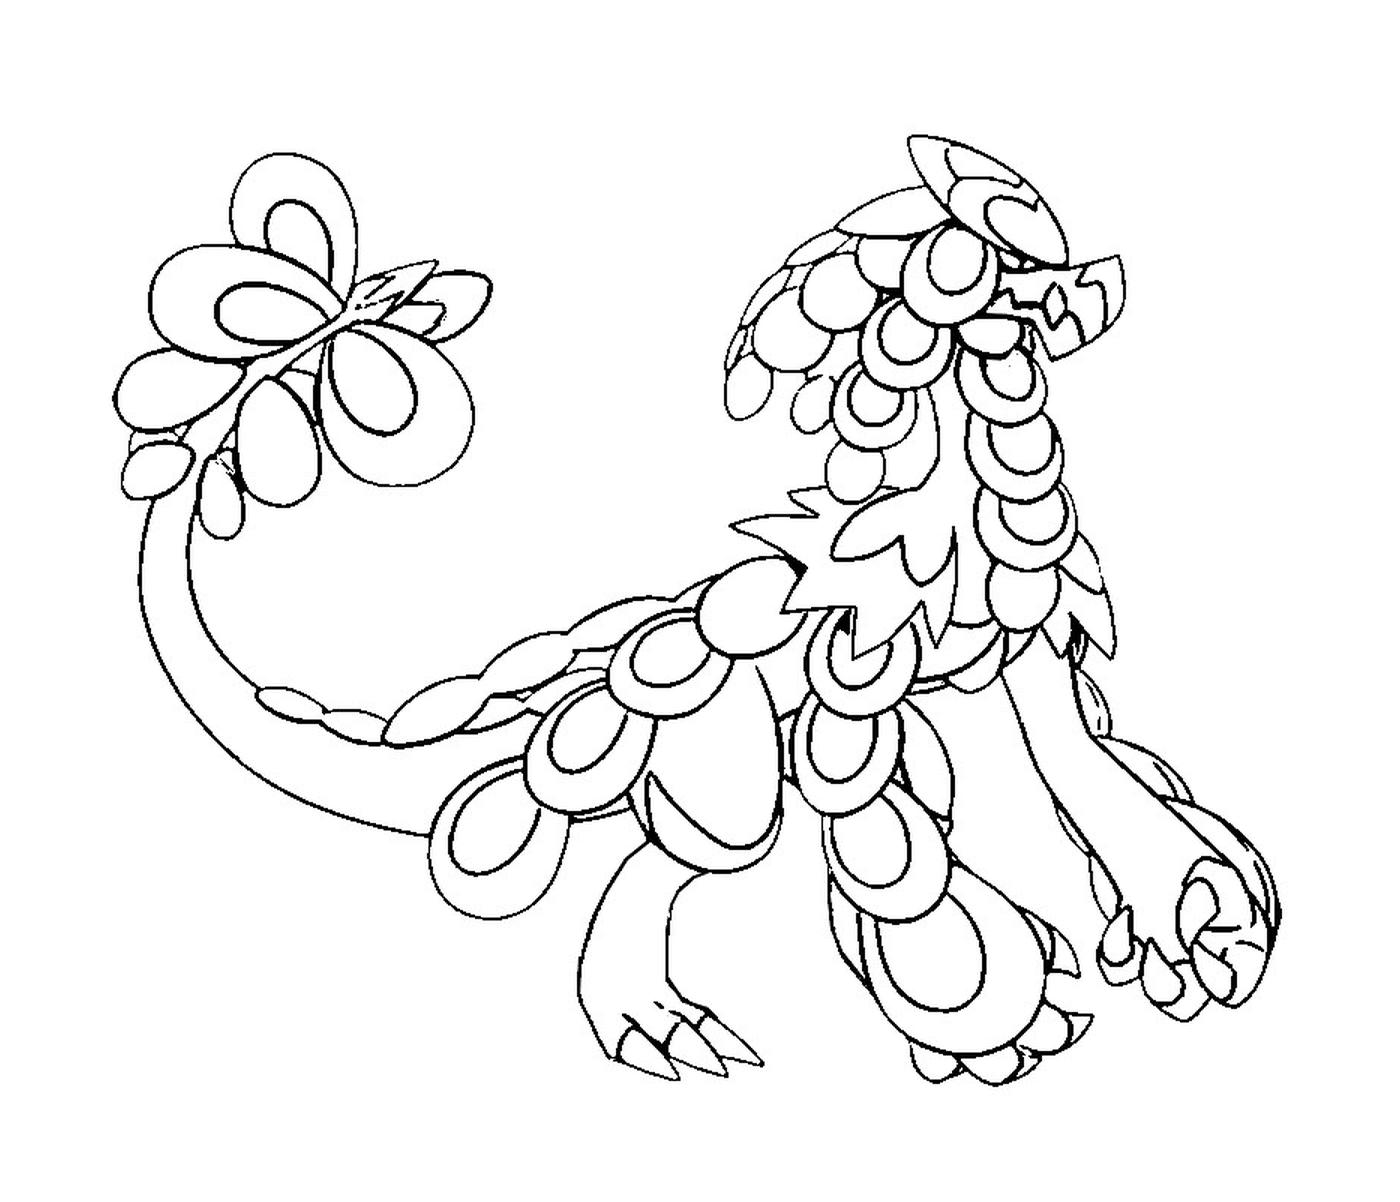   Ekaiser, un dragon avec une fleur sur sa queue 